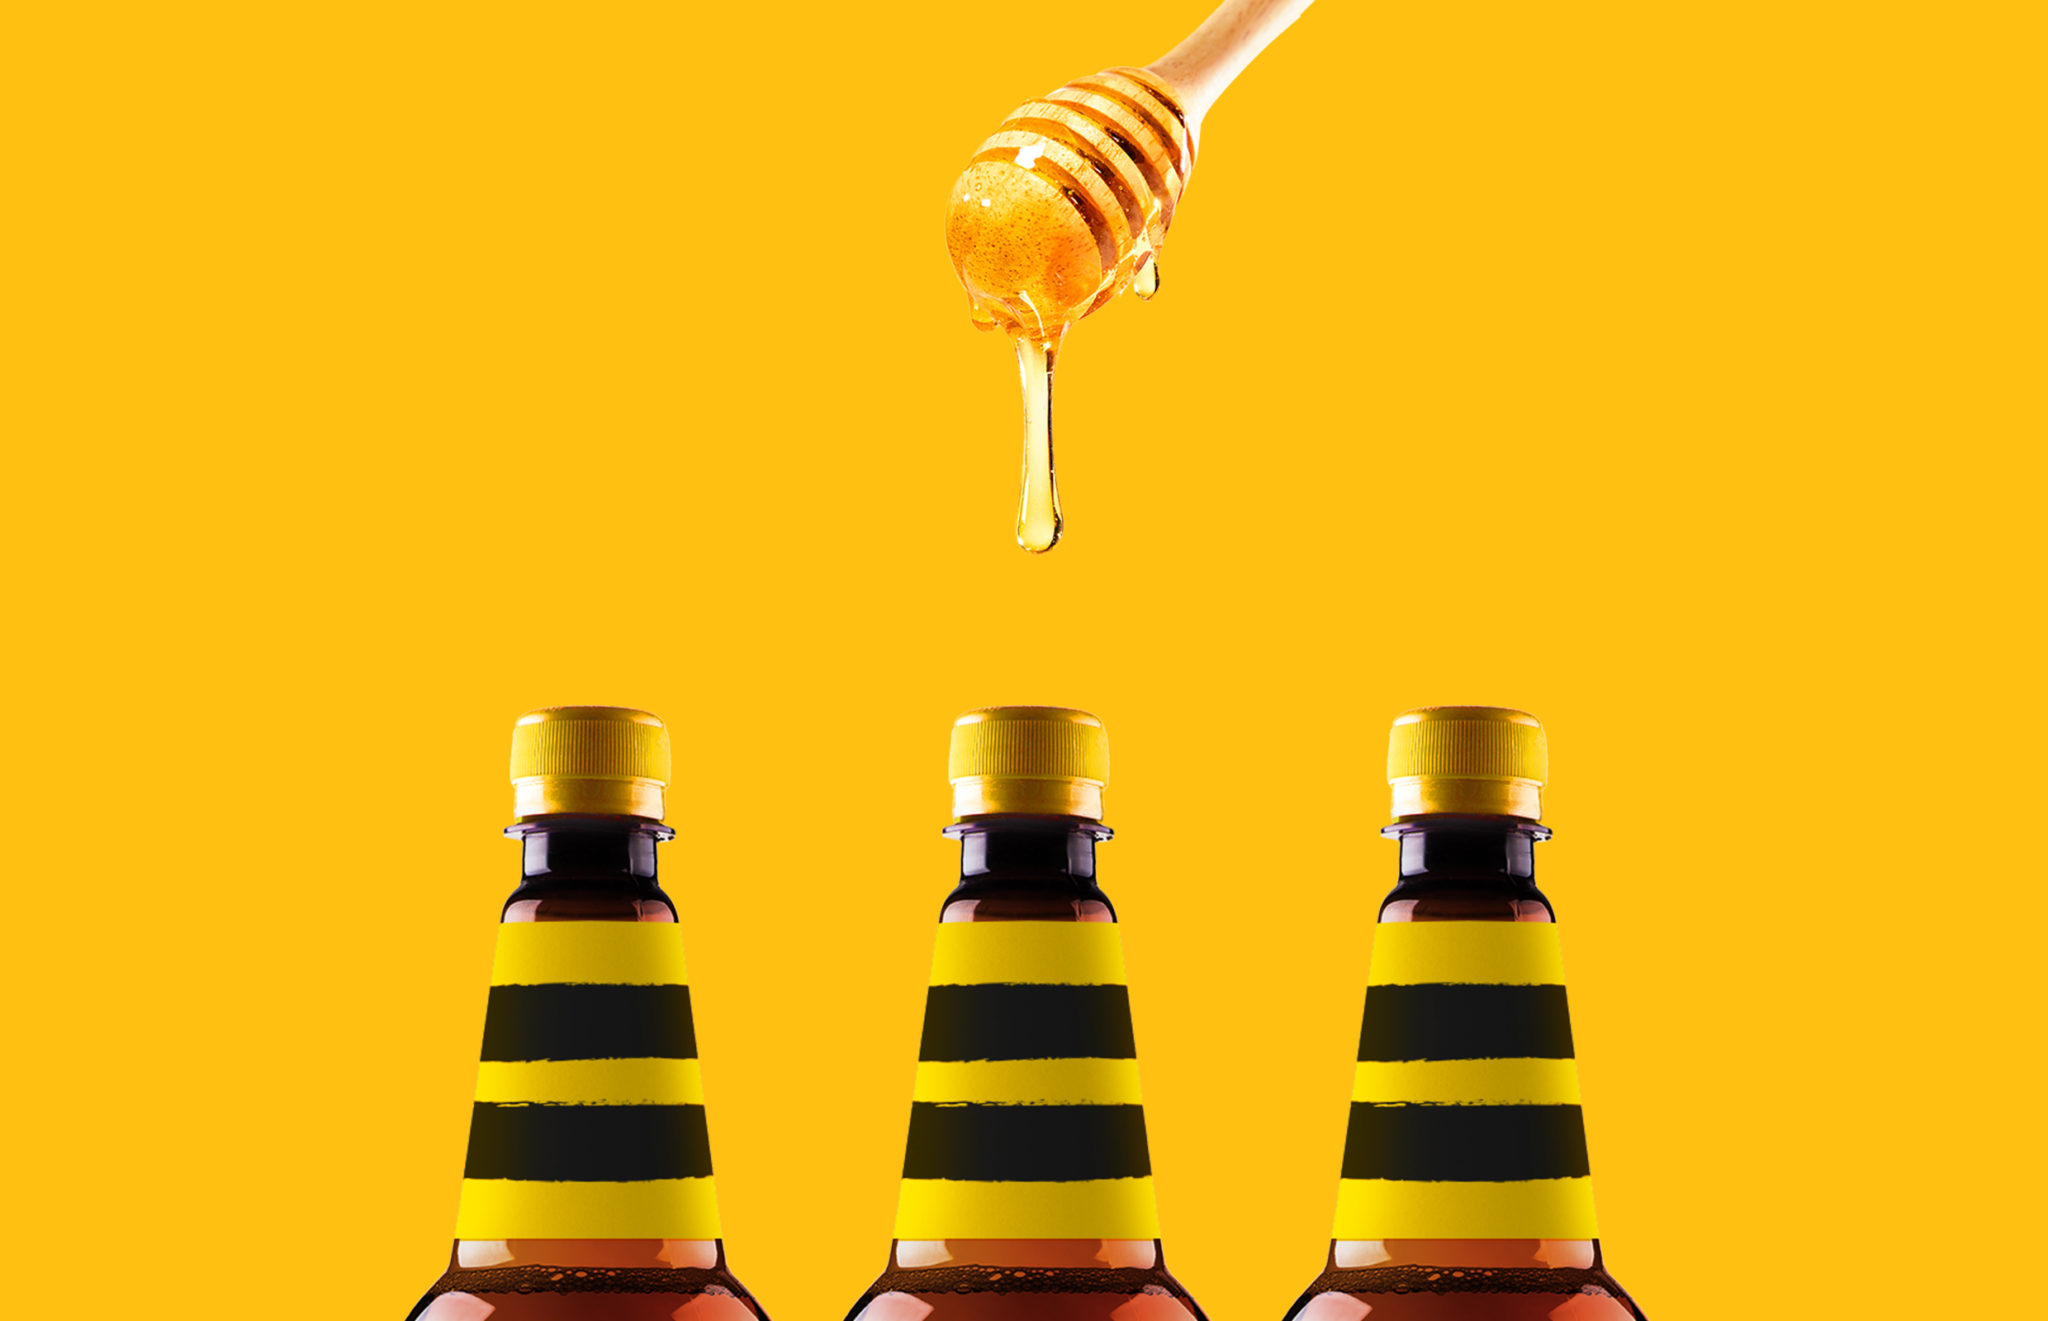 Дизайн упаковки бренда «Солод и мед» разработали в агентстве Getbrand